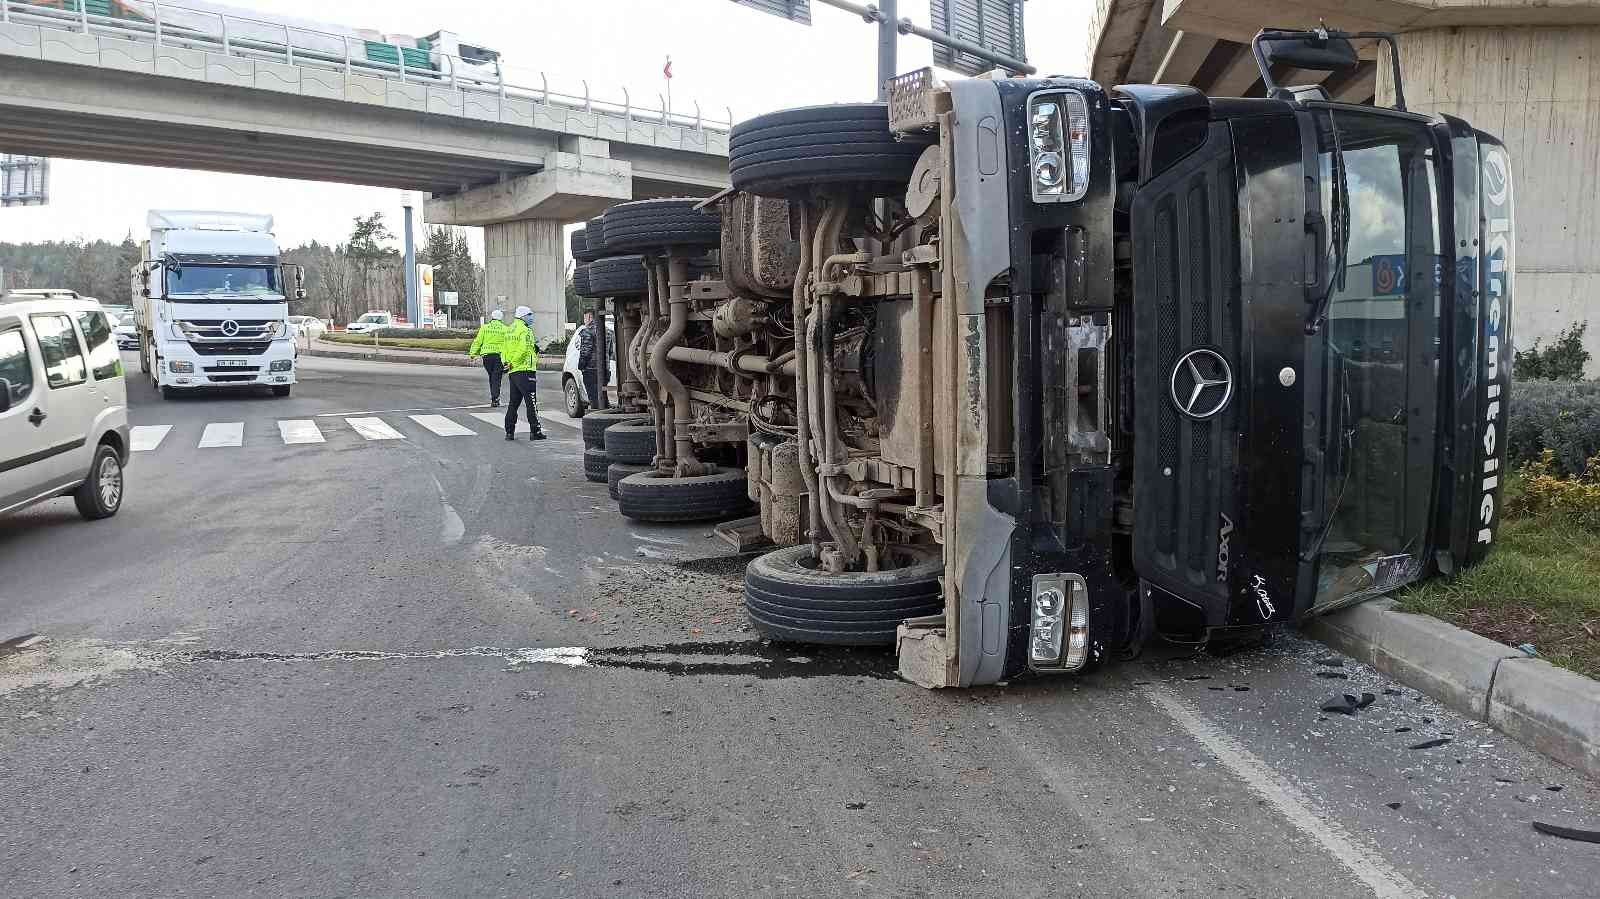 Vinç yüklü kamyon yola devrildi: 1 yaralı #edirne